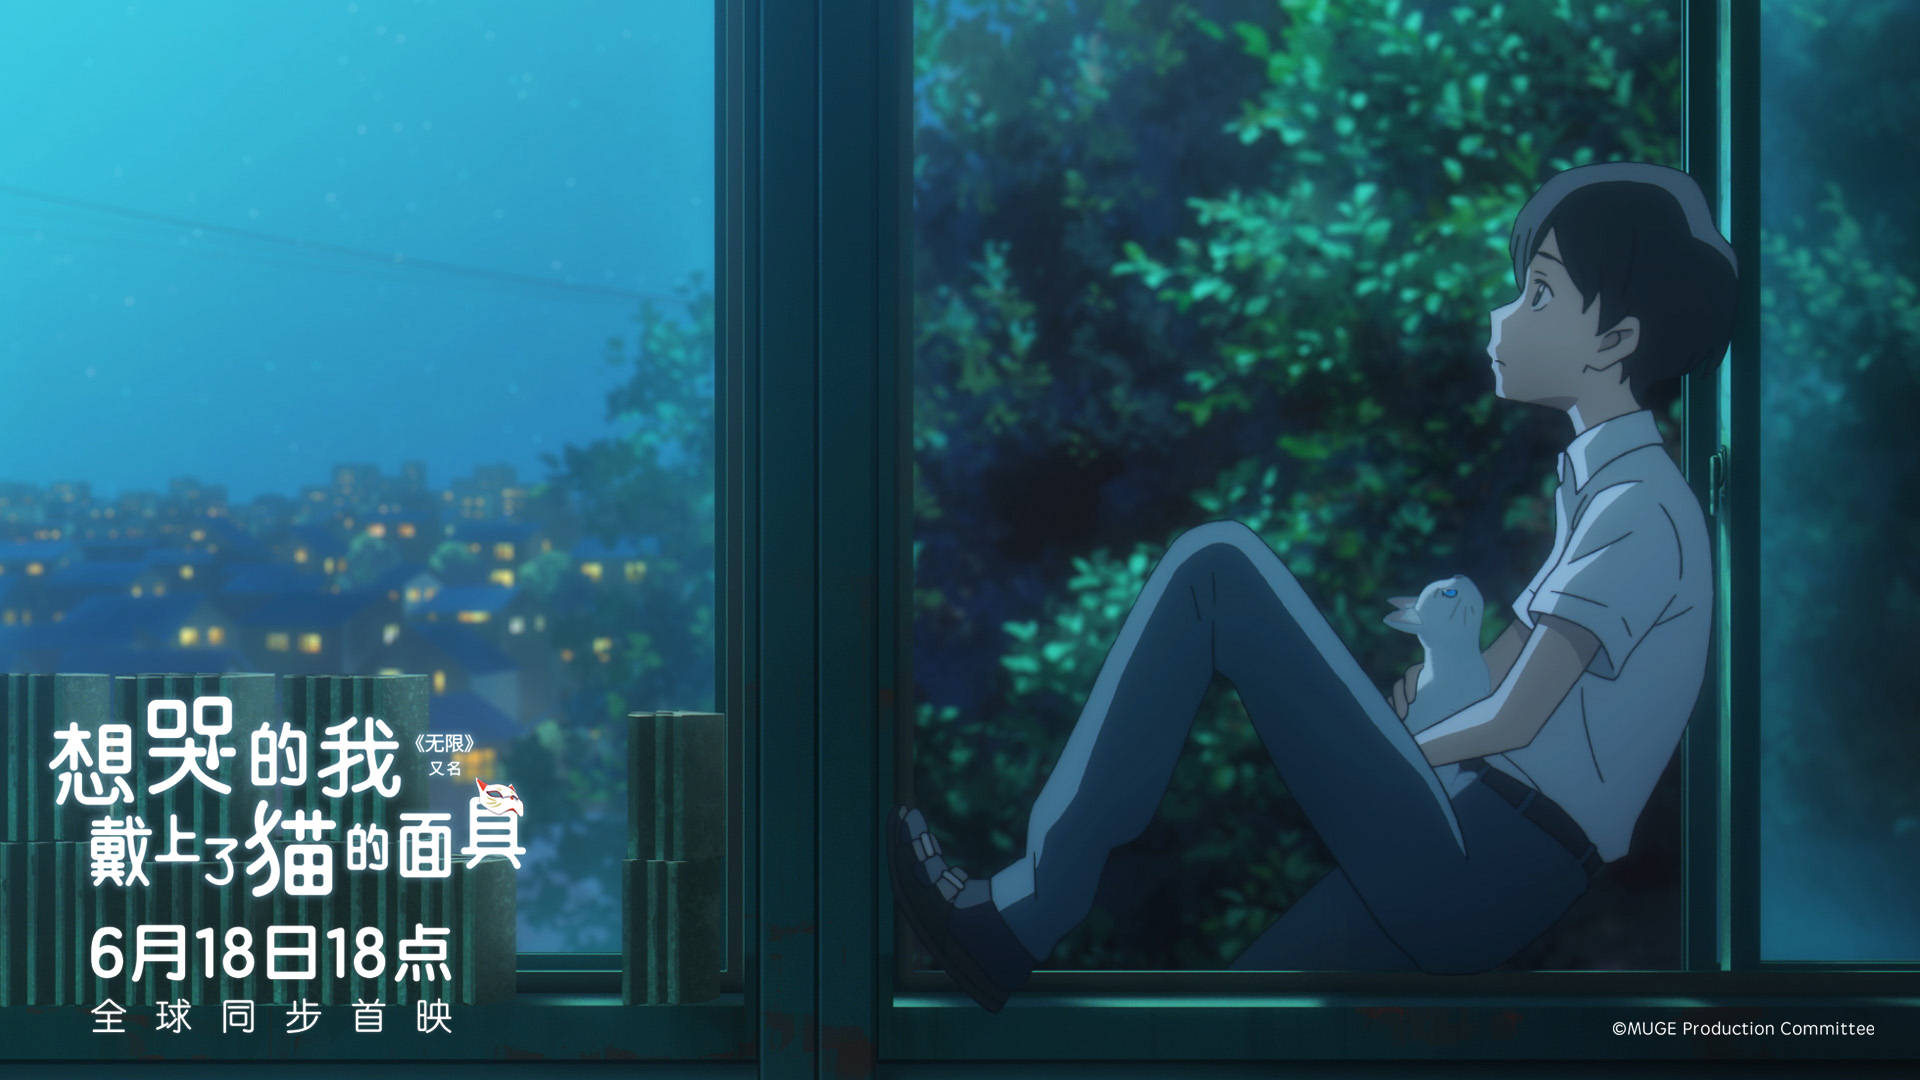 日之出贤人抱着太郎坐在窗边一起看夜空